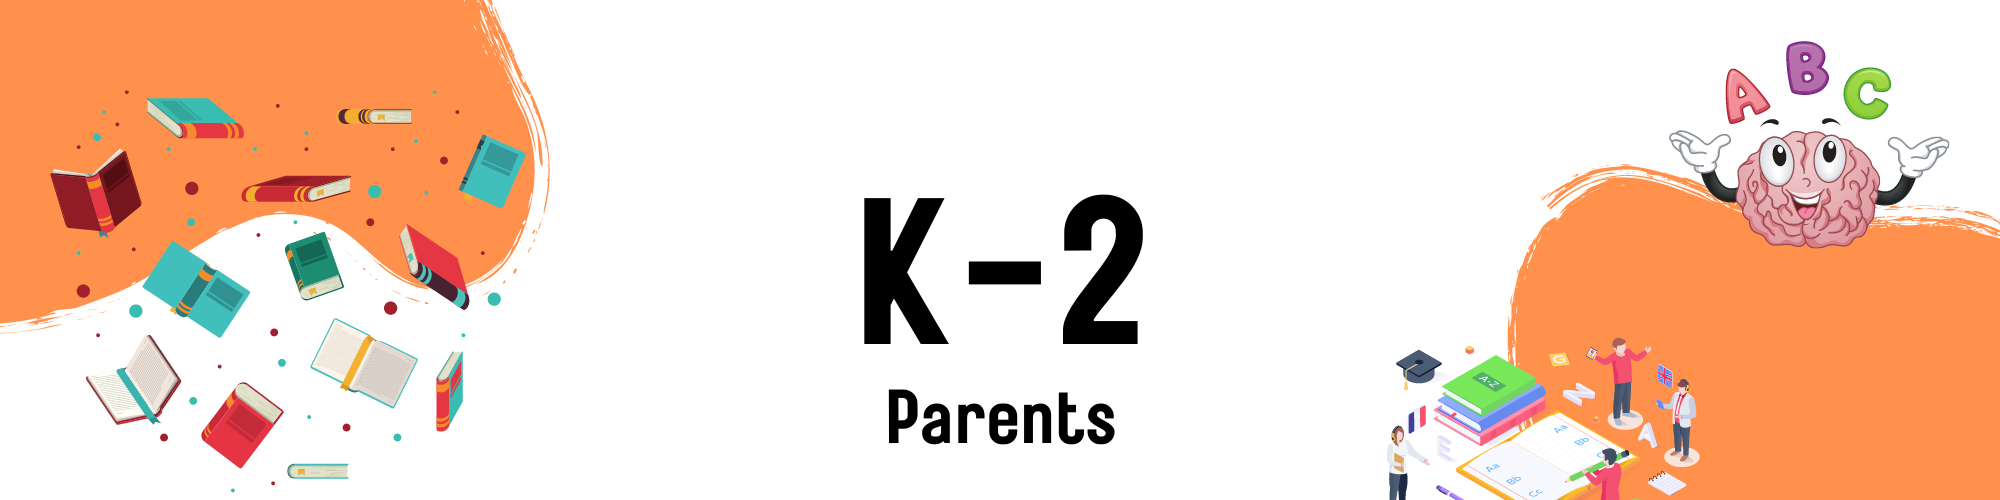 K-2 Parents